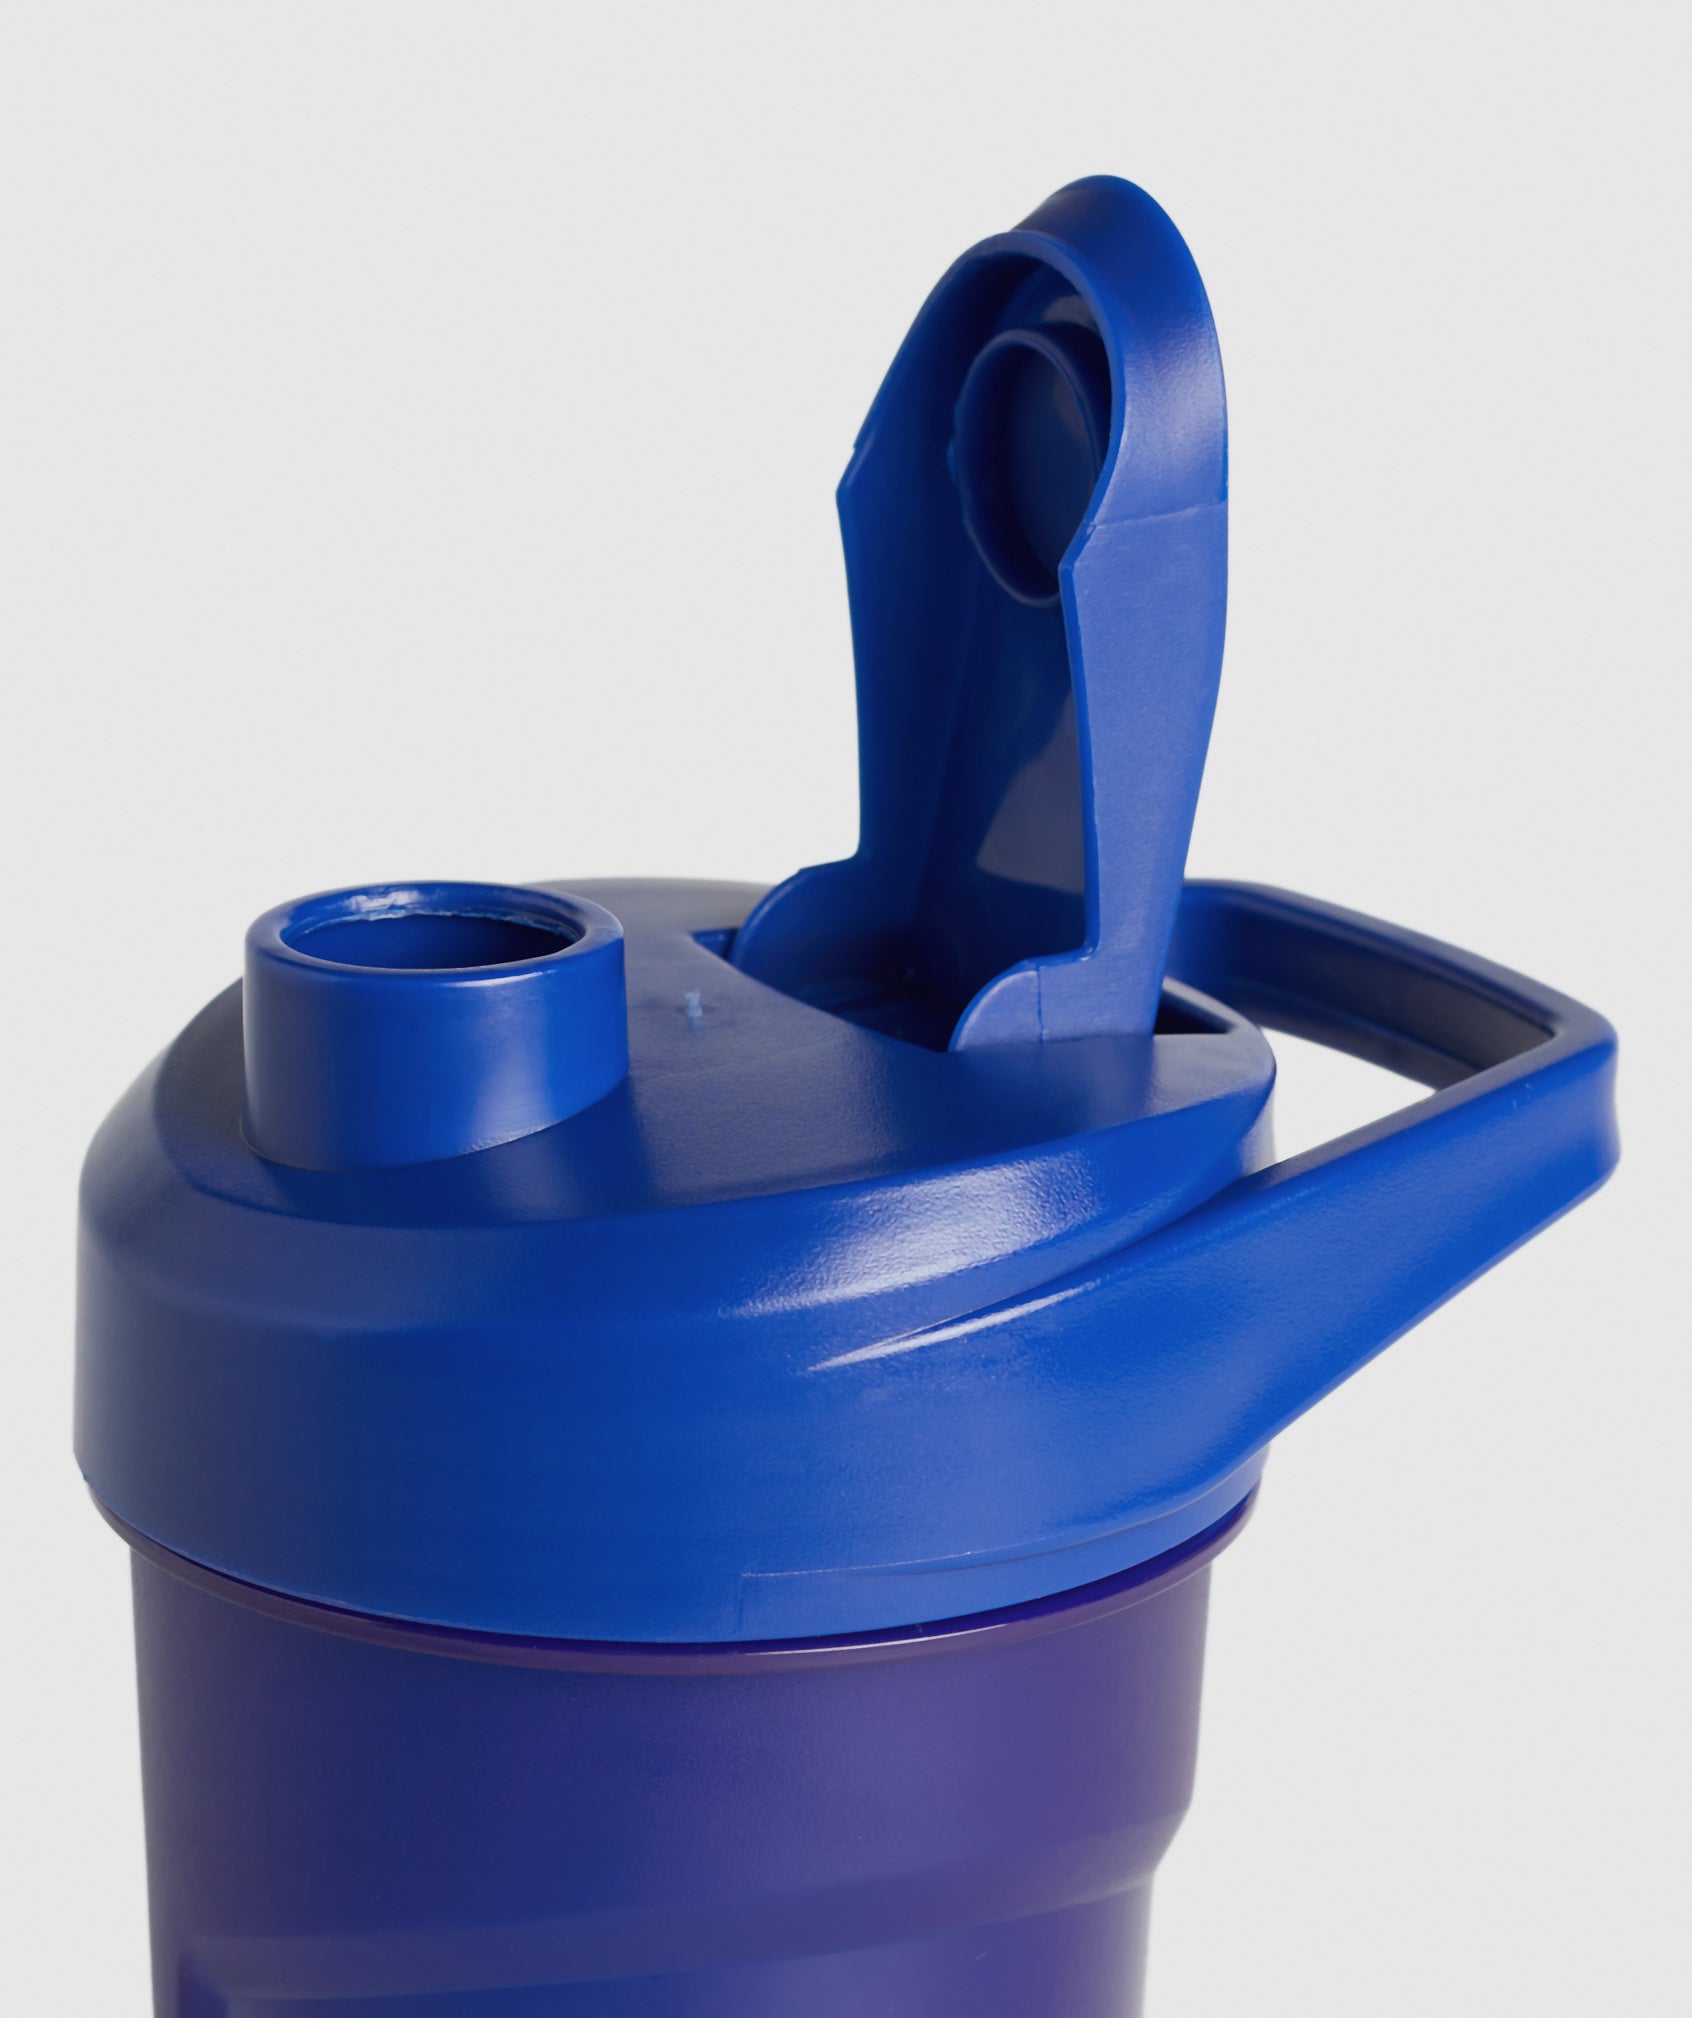 400ml Shaker Bottle in Wave Blue - view 3